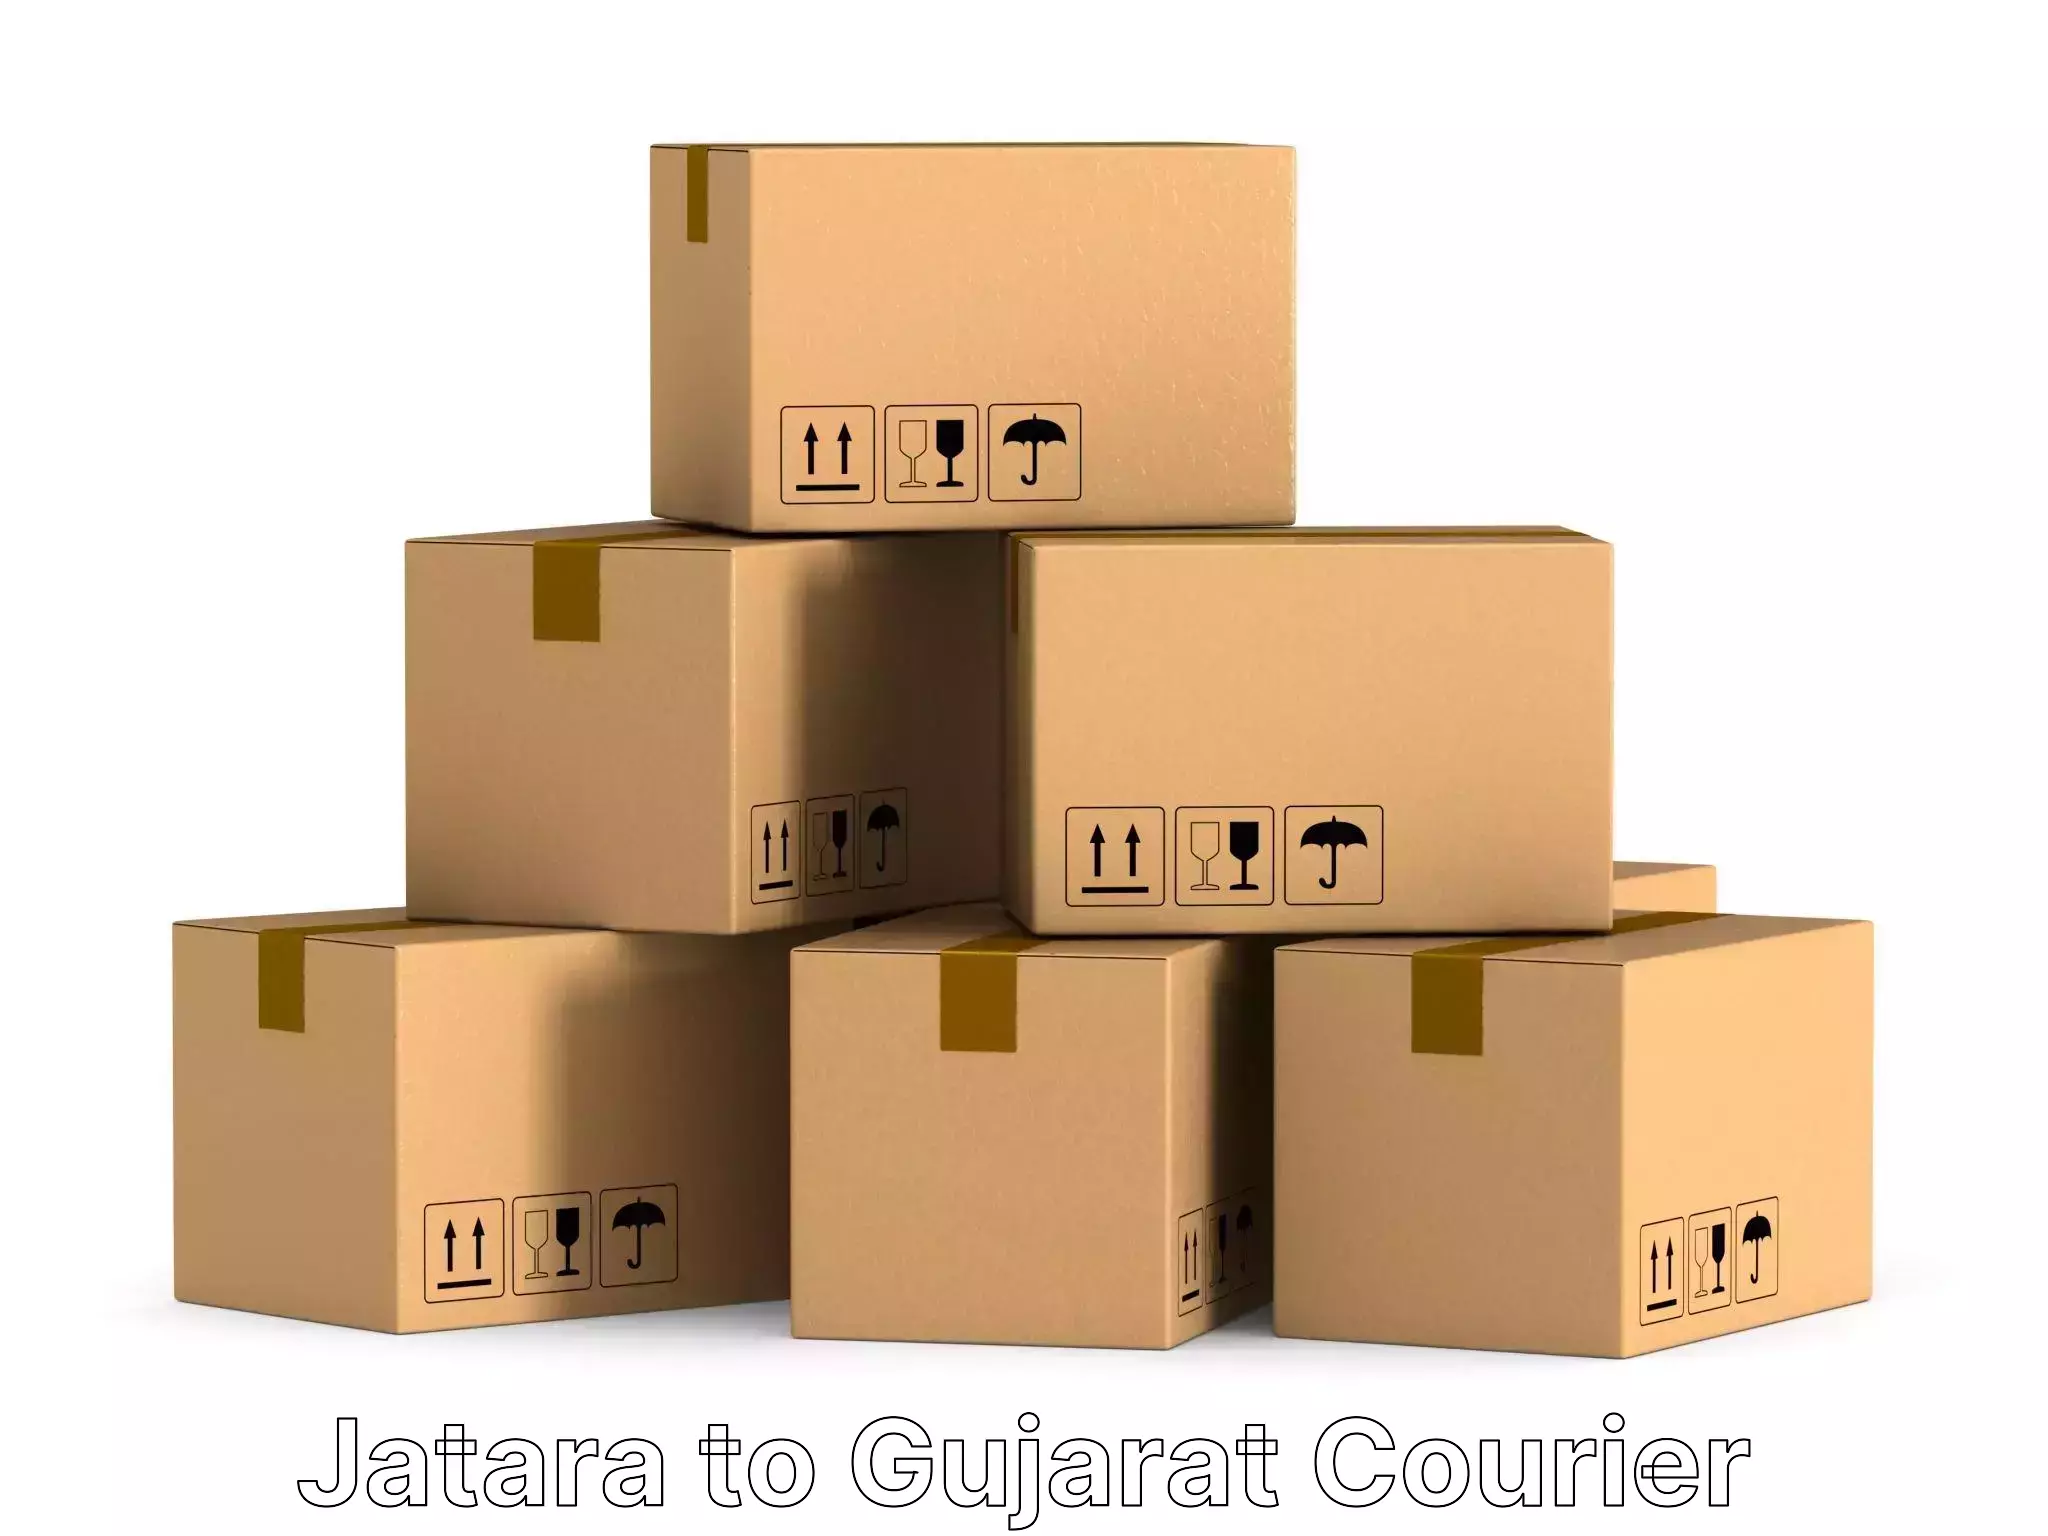 Furniture moving plans in Jatara to Anjar